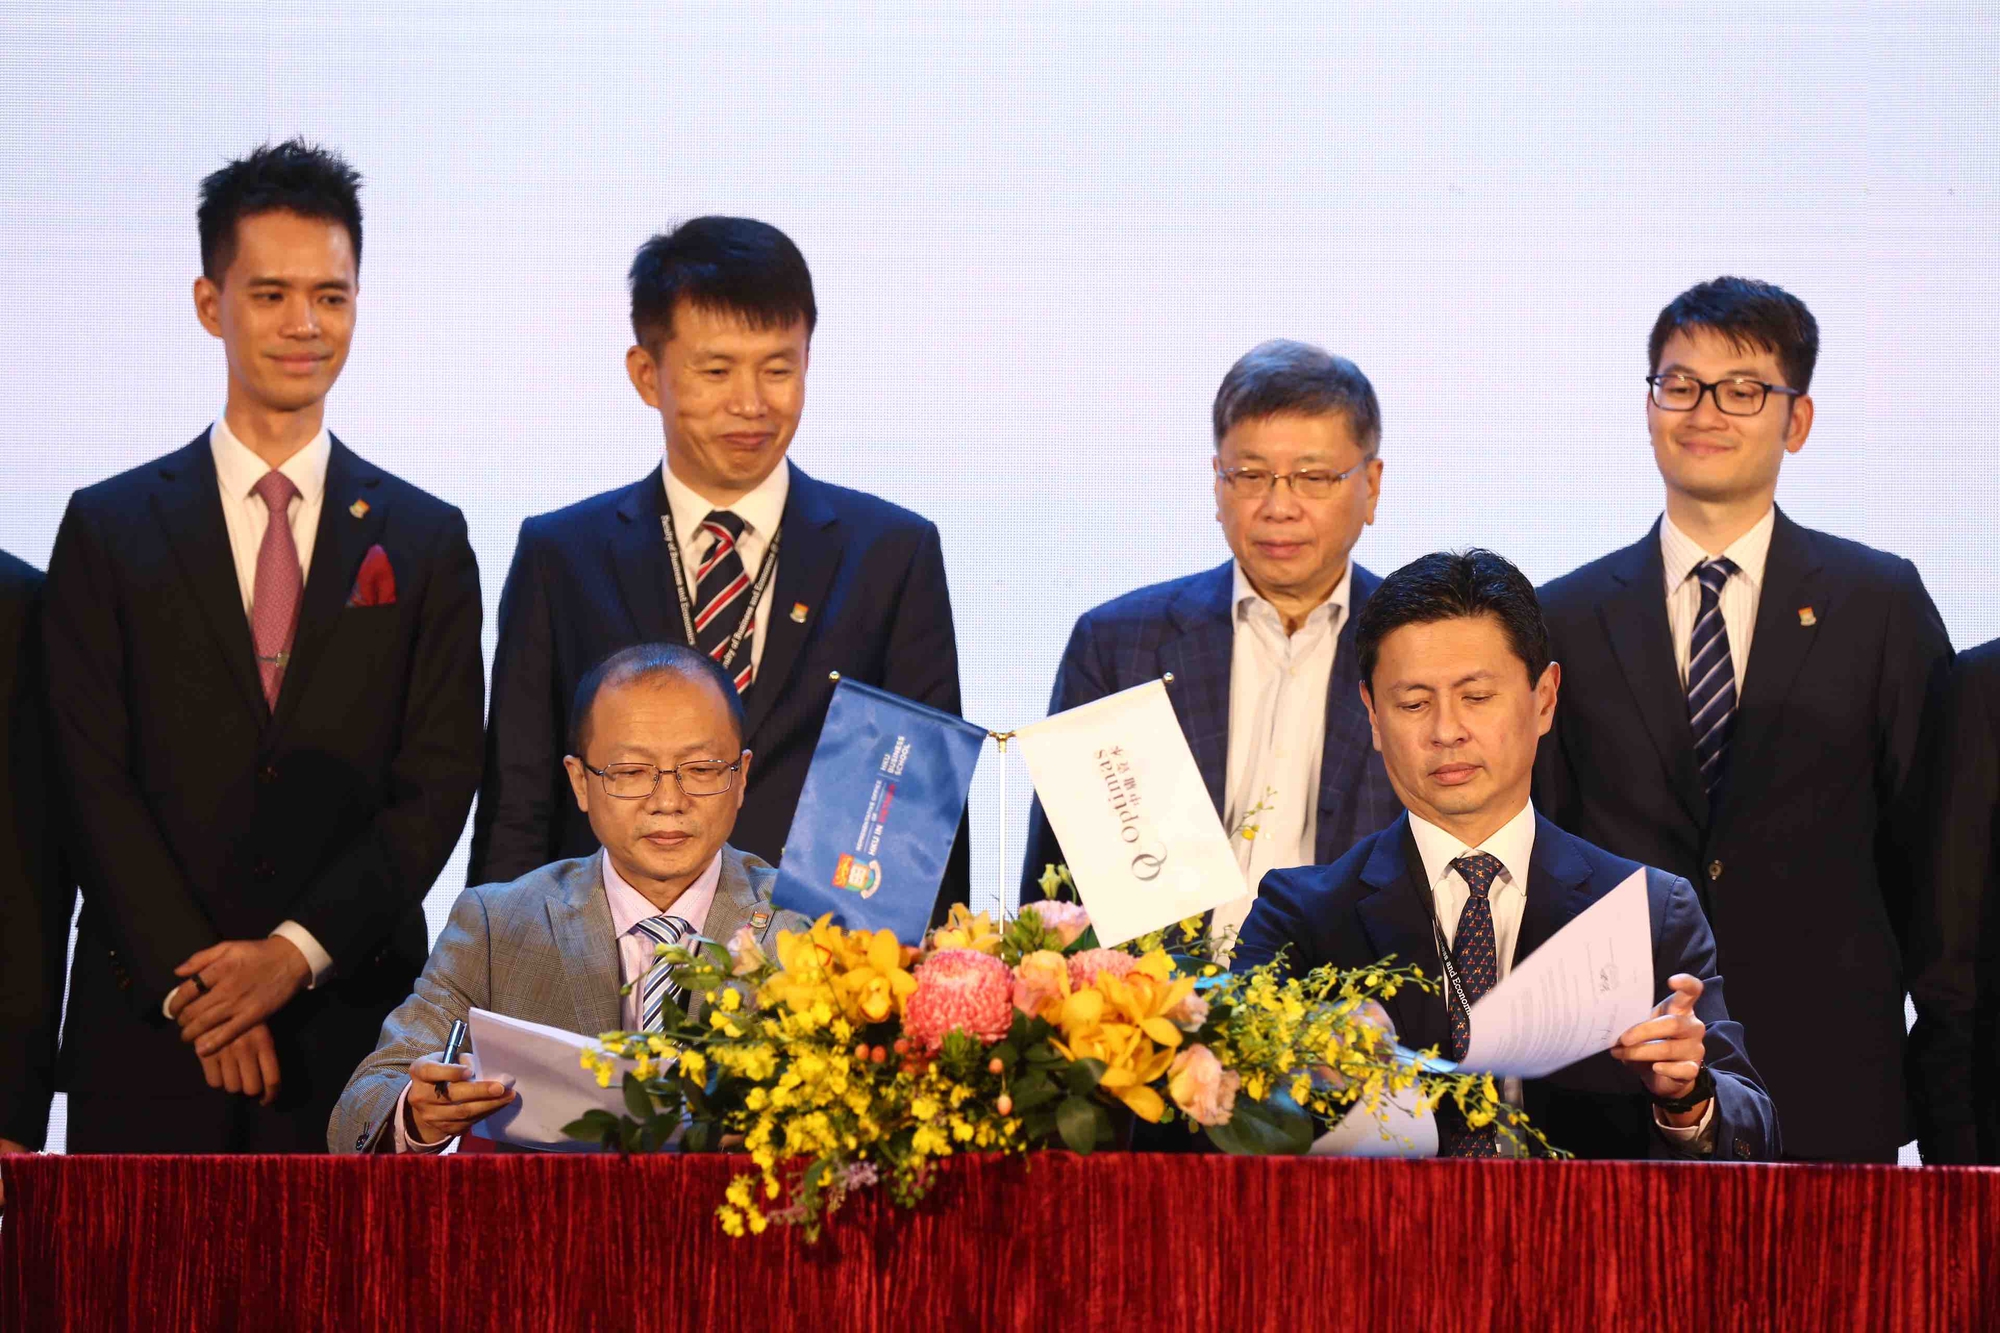 Đại học Hong Kong trao học bổng, thúc đẩy khởi nghiệp Việt Nam - Ảnh 1.